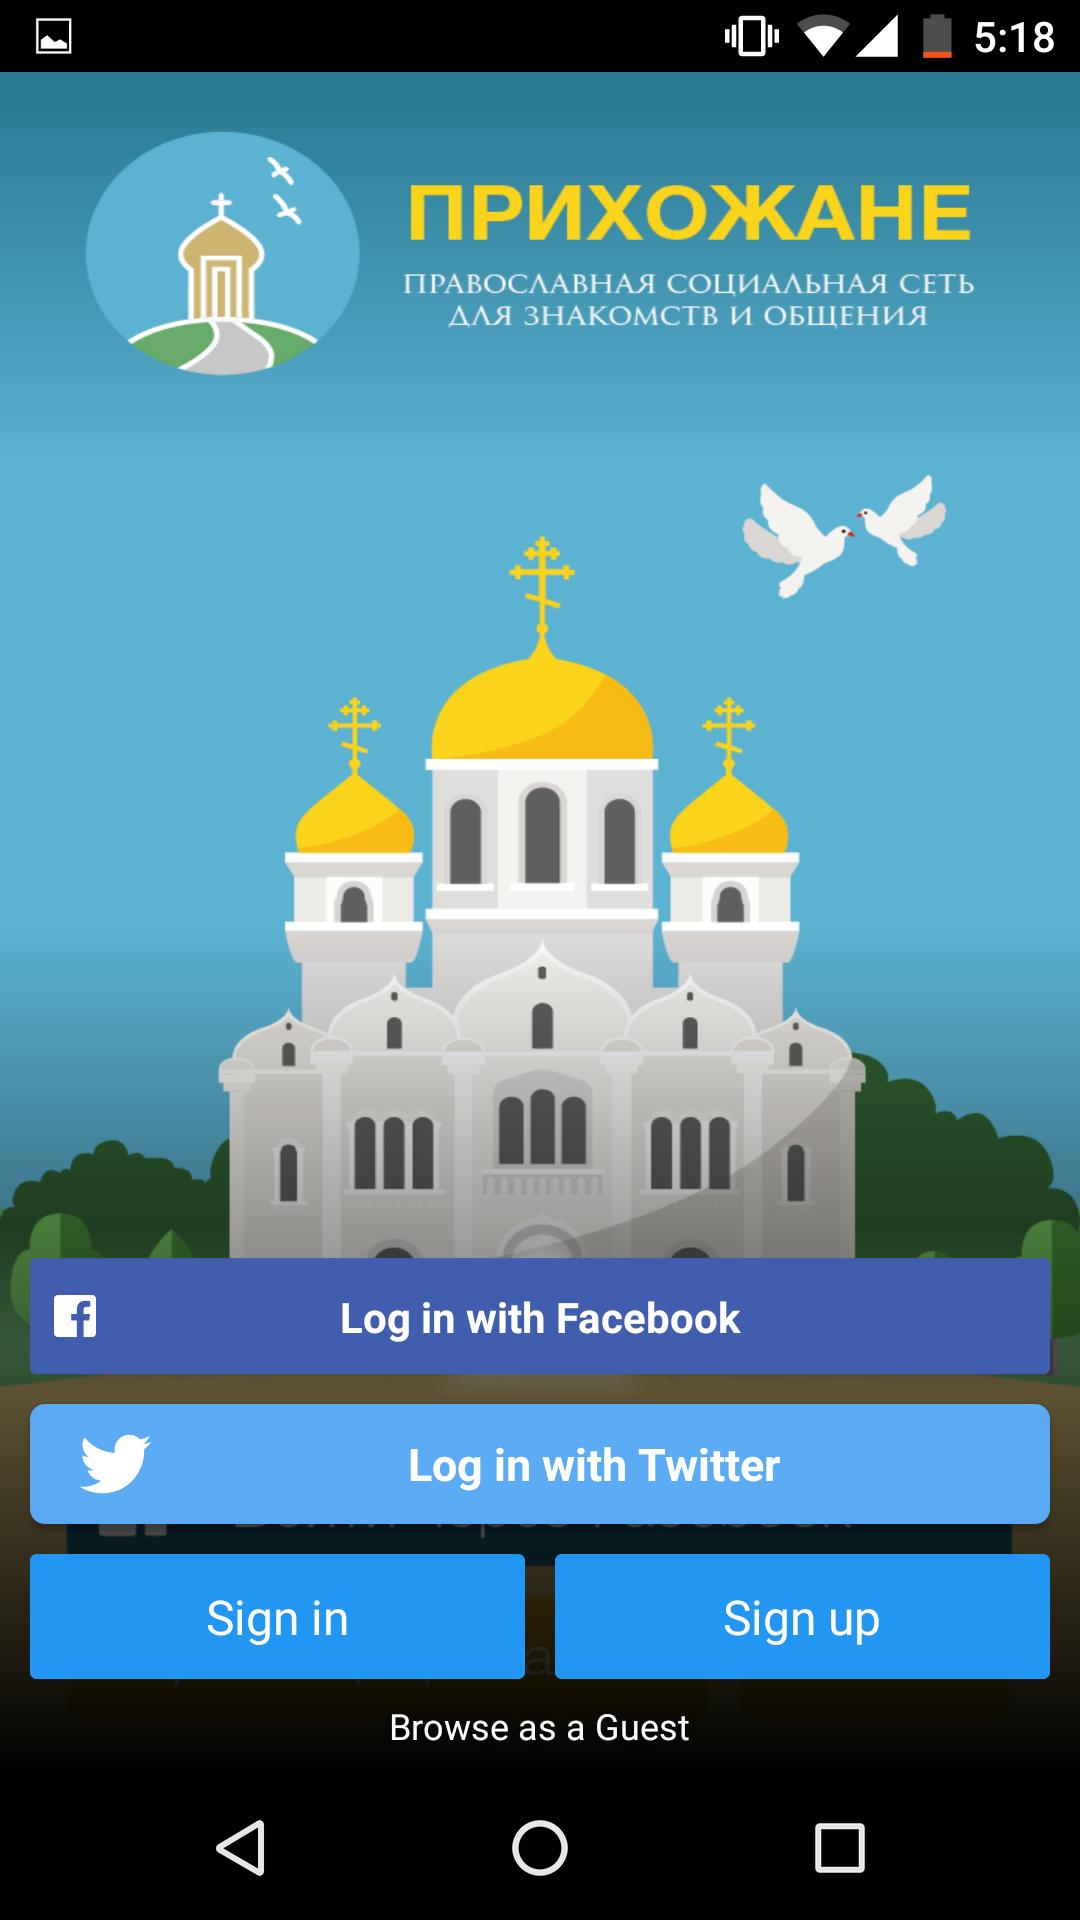 Прихожане ру. Андроид ру. Православные социальные группы